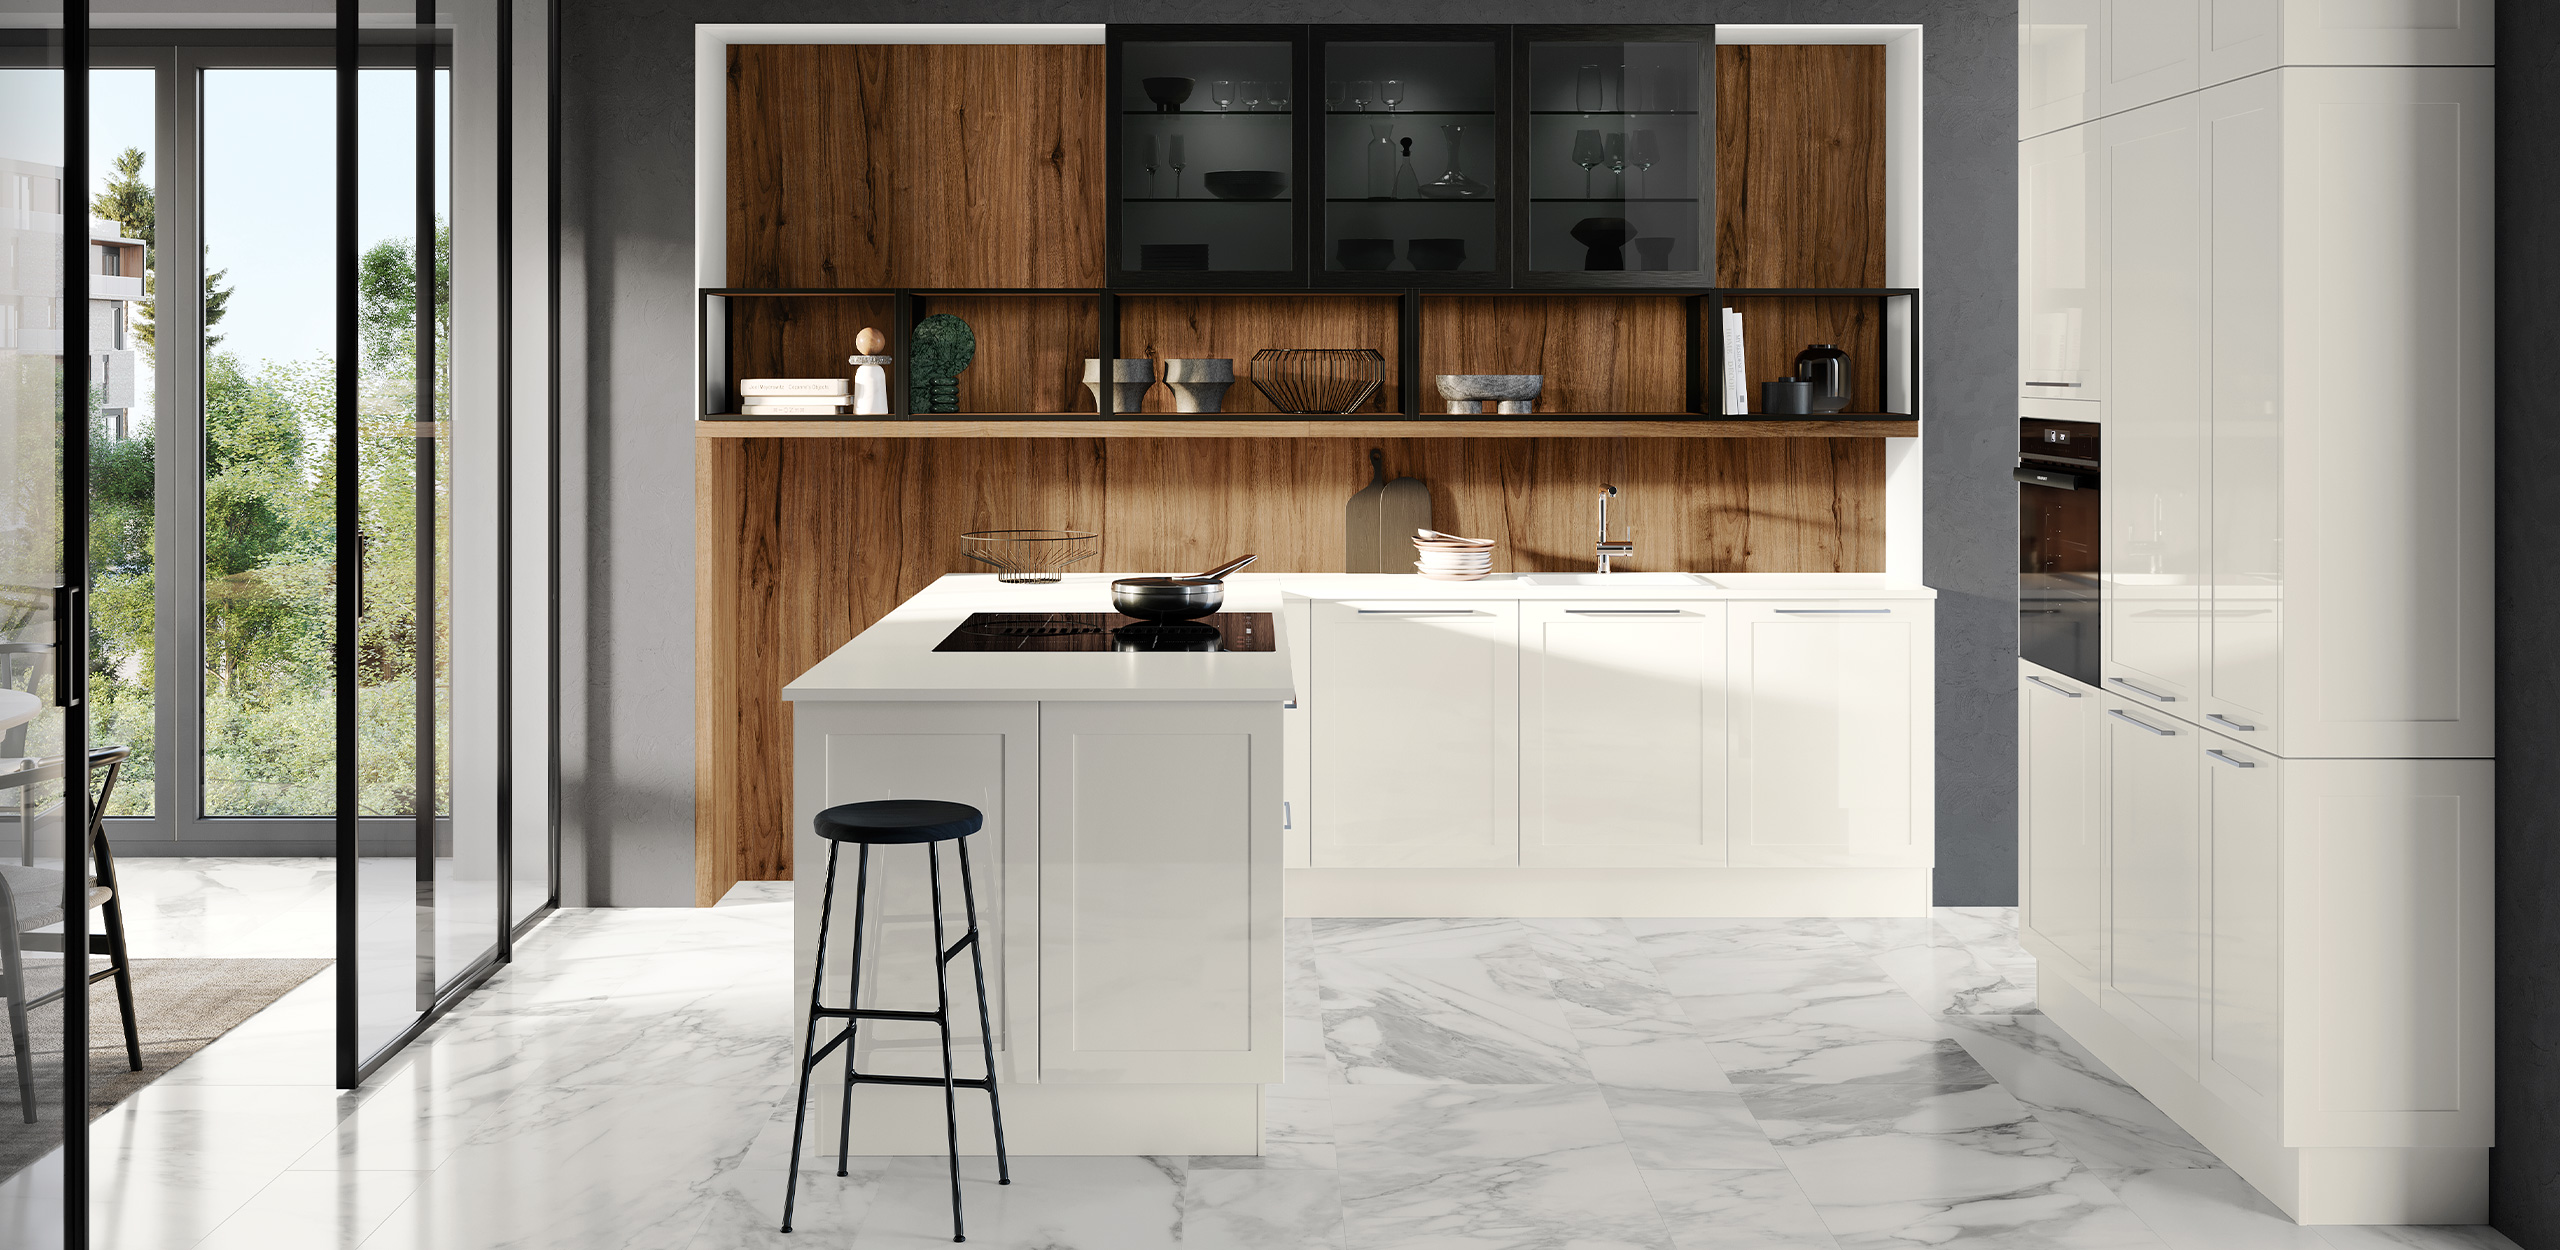 Ansicht der Küche in GRANADA Weiß mit hochglänzenden Rahmenfronten, einer Rückwand in Nussbaumoptik mit schwarzen Regalelementen sowie einer deckenhohen Hochwand